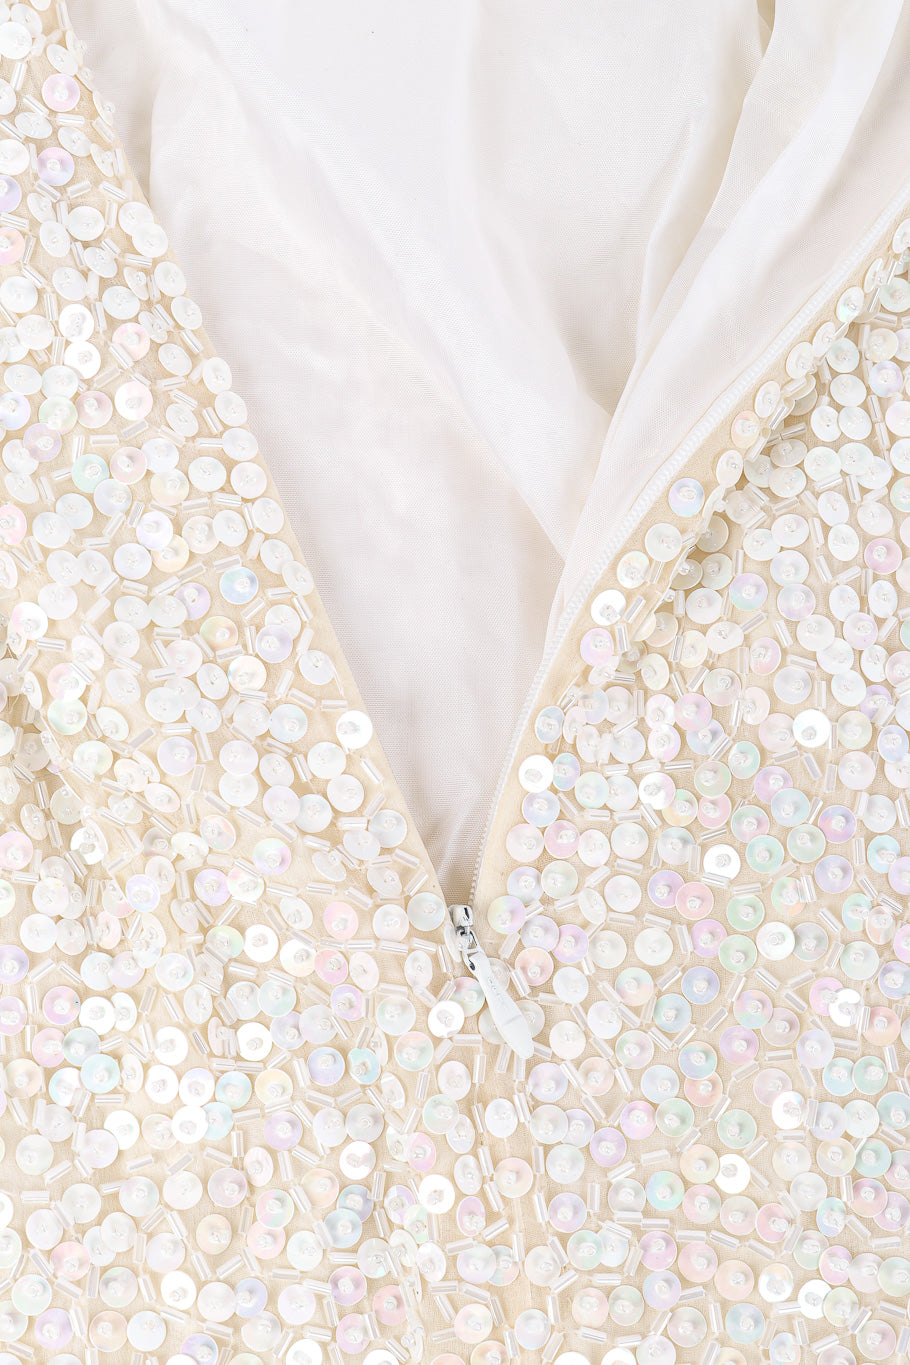 Beaded gown by Lillie Rubin on flat lay zipper @recessla